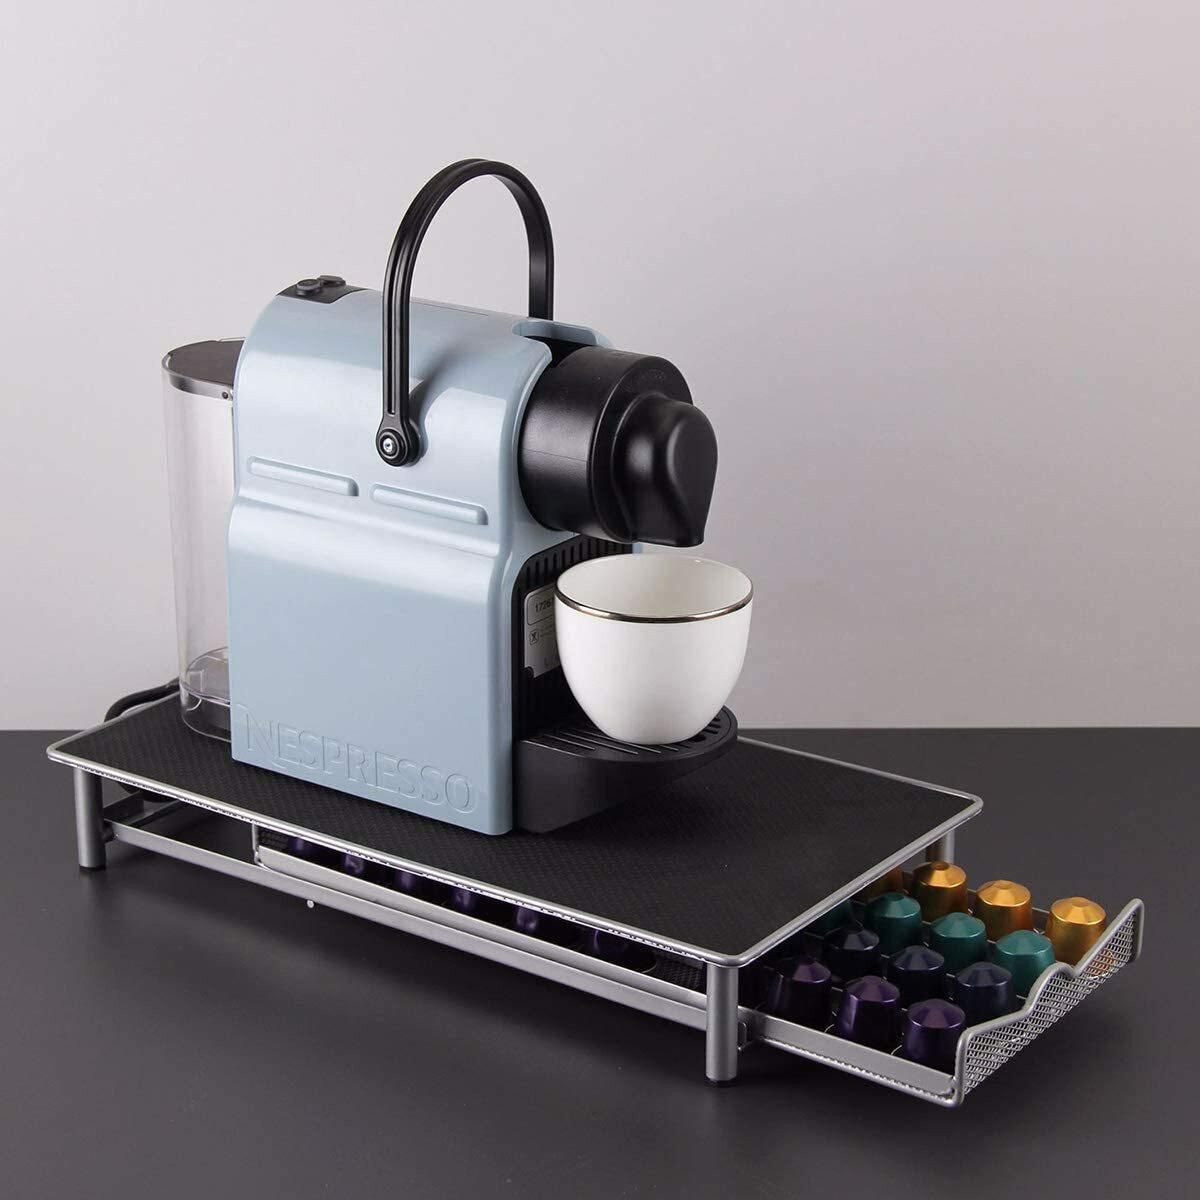 Doreen Coffee Capsule Storage Drawer Holder Compatible for Nespresso Storage Steel Organizer Nespresso Holder for Capsules - 40 Capsule Capacity（GC451A）